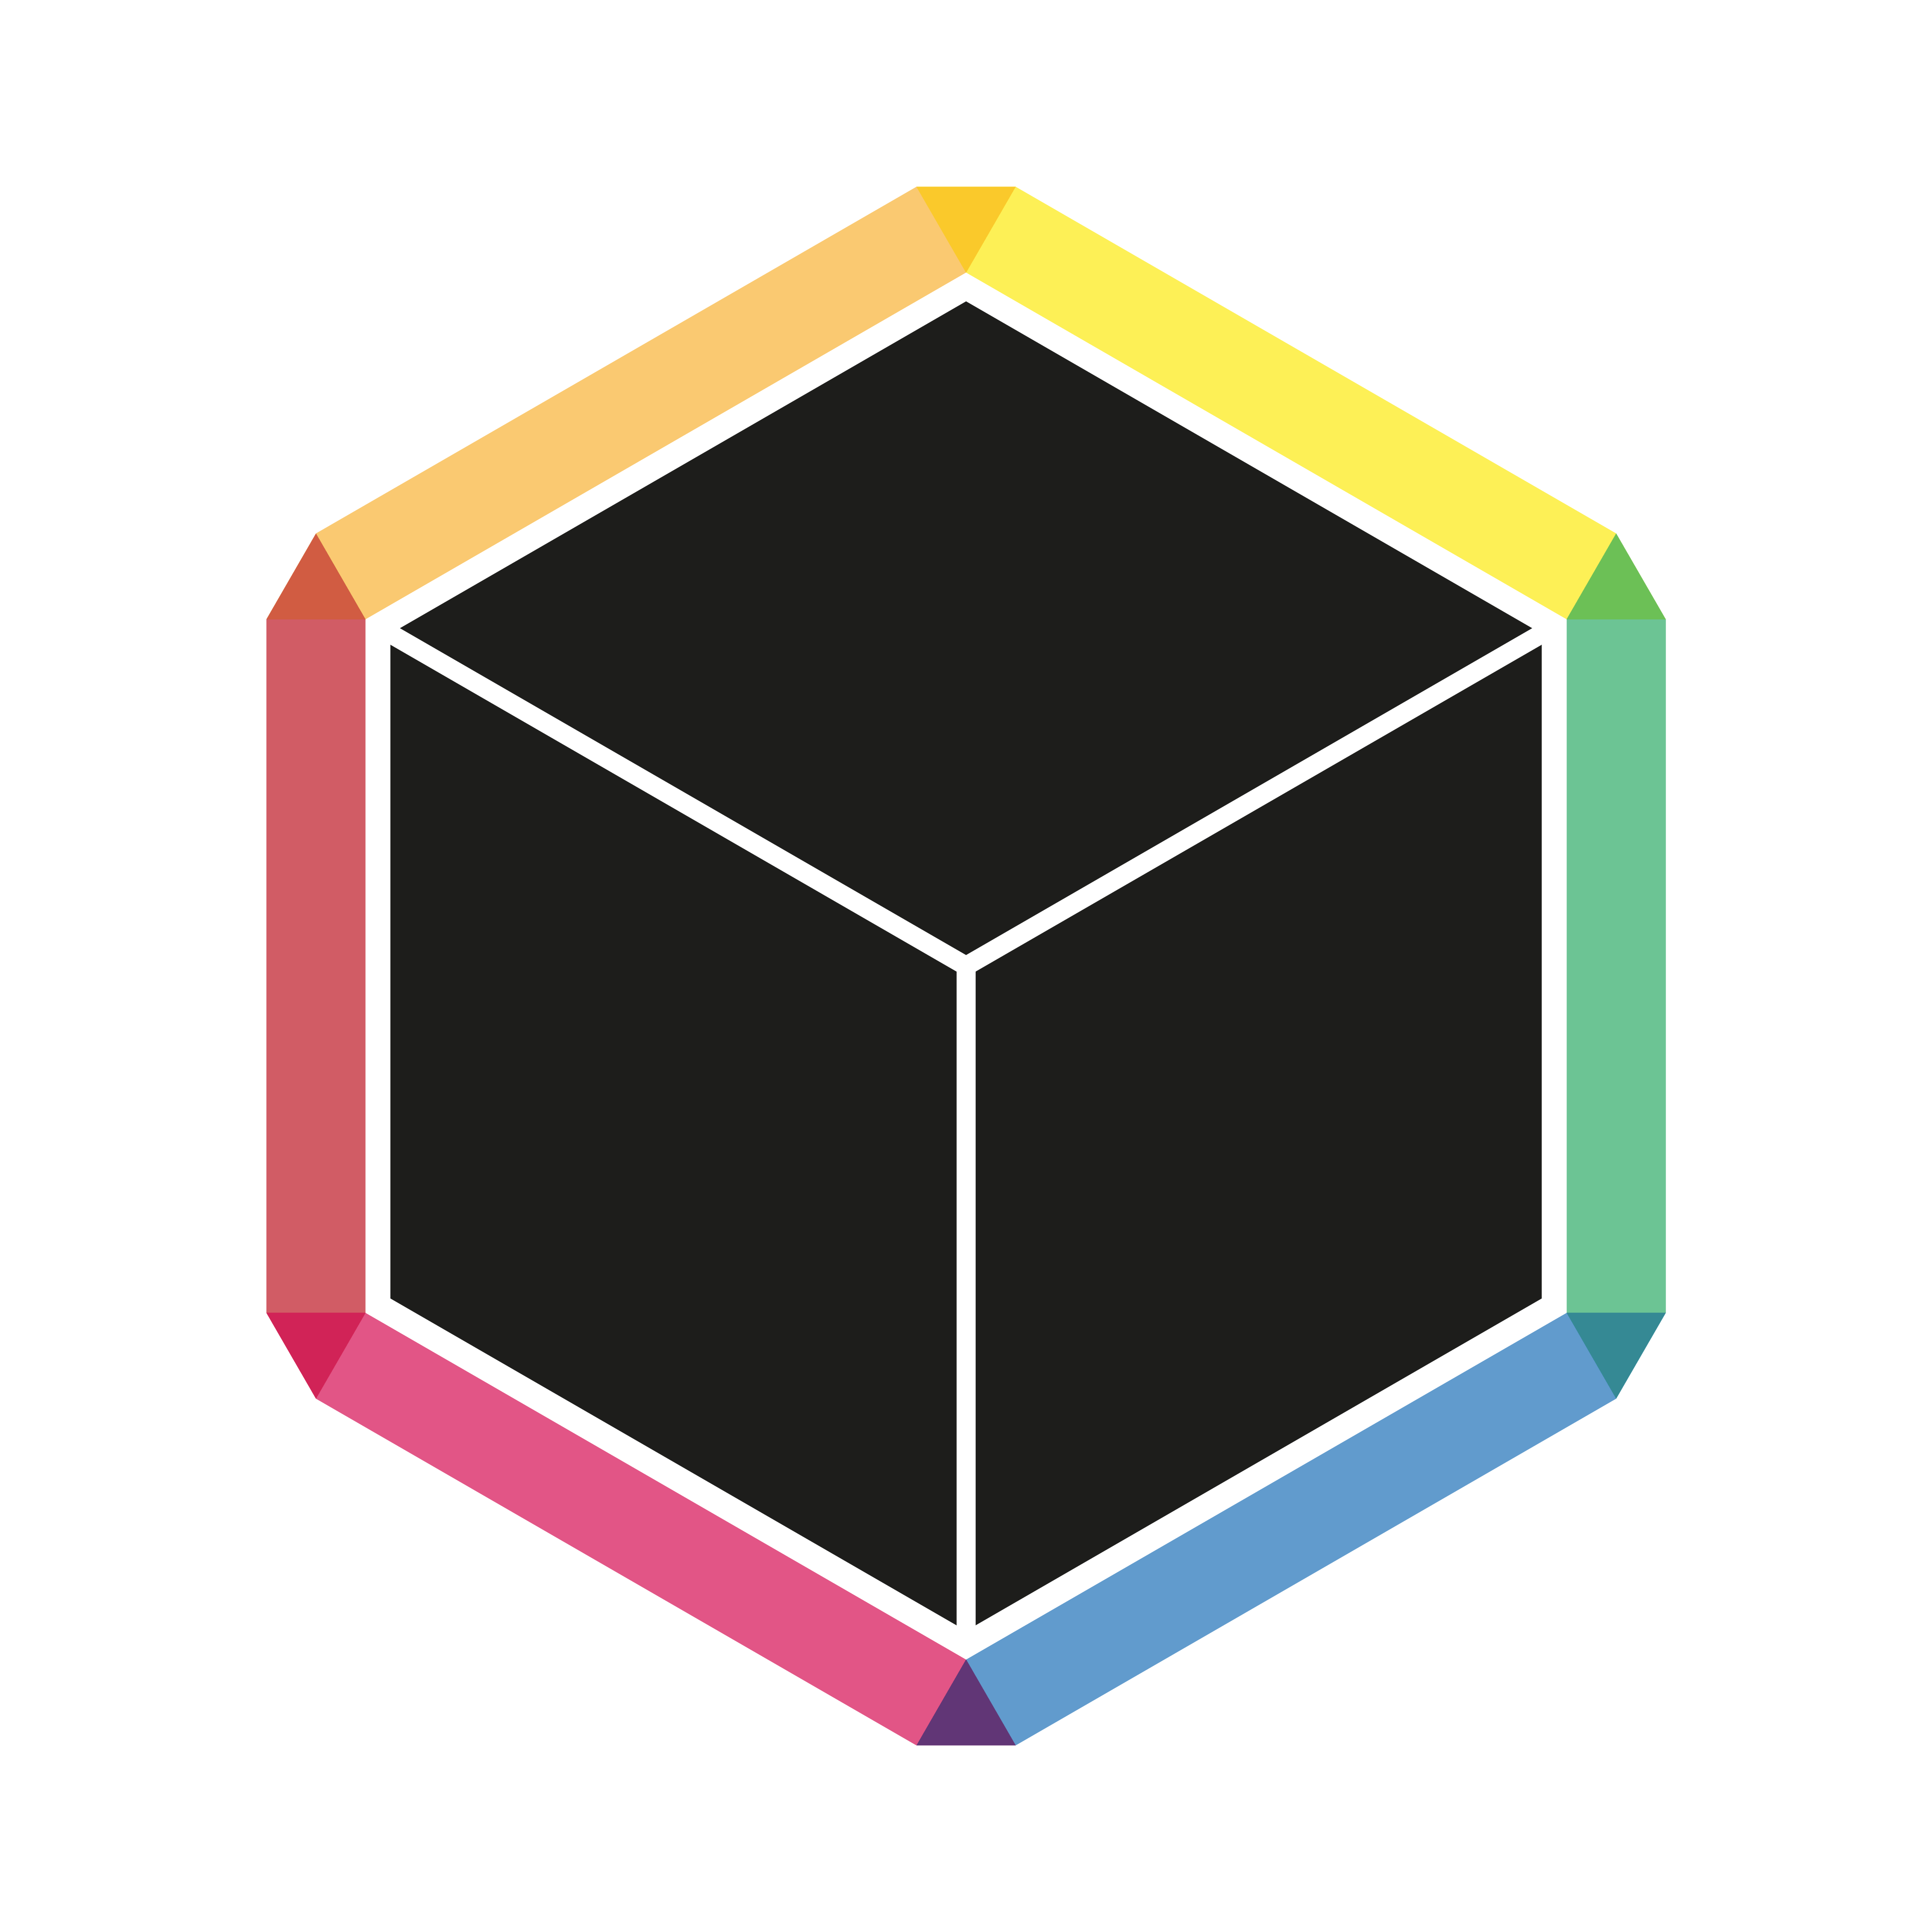 Cubicle Logo - Henri's